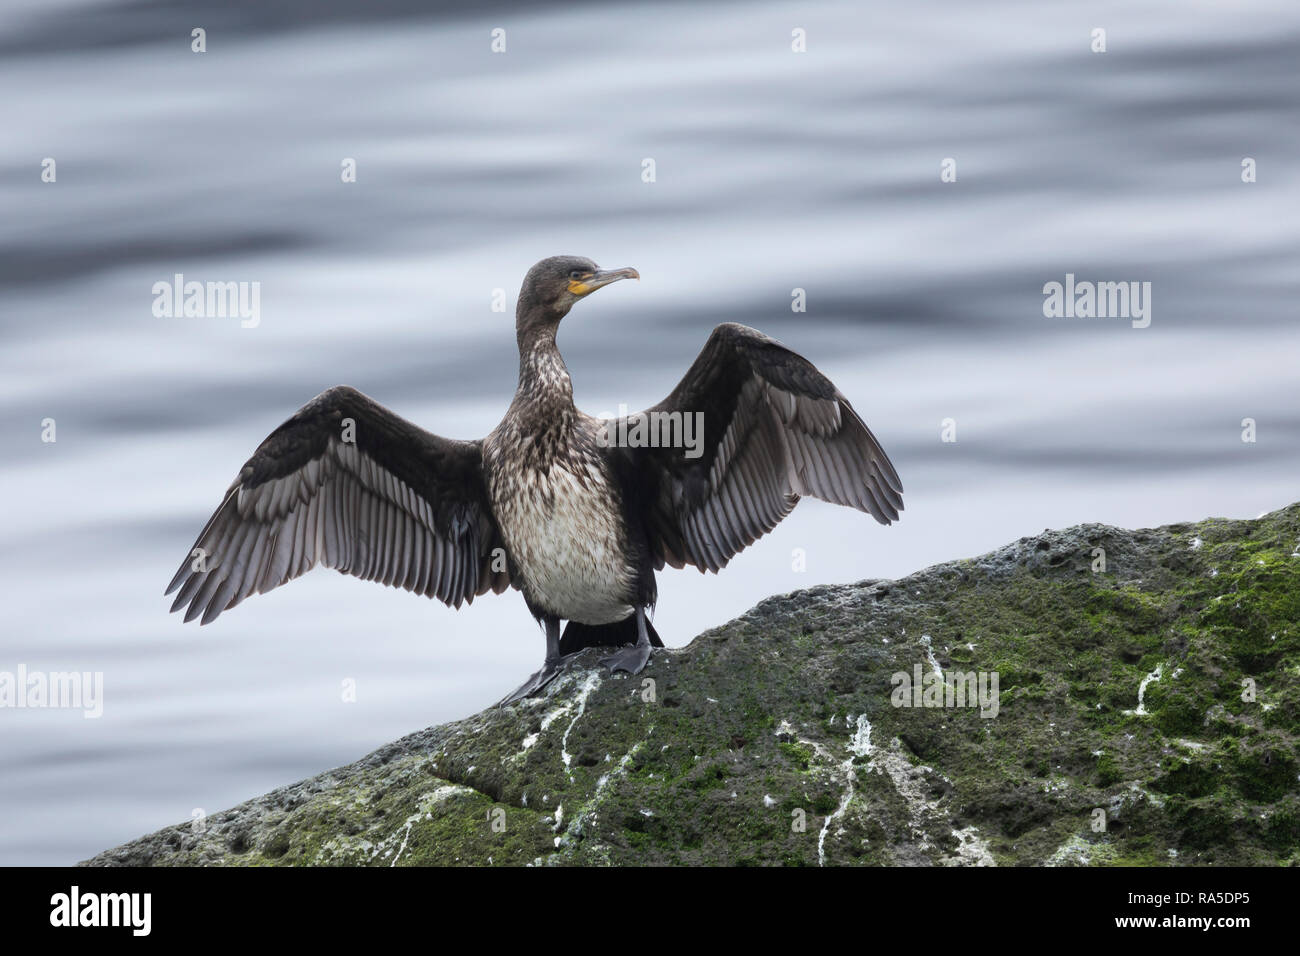 Kormoran trocknet seine Flügel, Phalacrocorax carbo, Great Cormorant, great black cormorant, black cormorant, large cormorant, black shag, le Grand Co Stock Photo